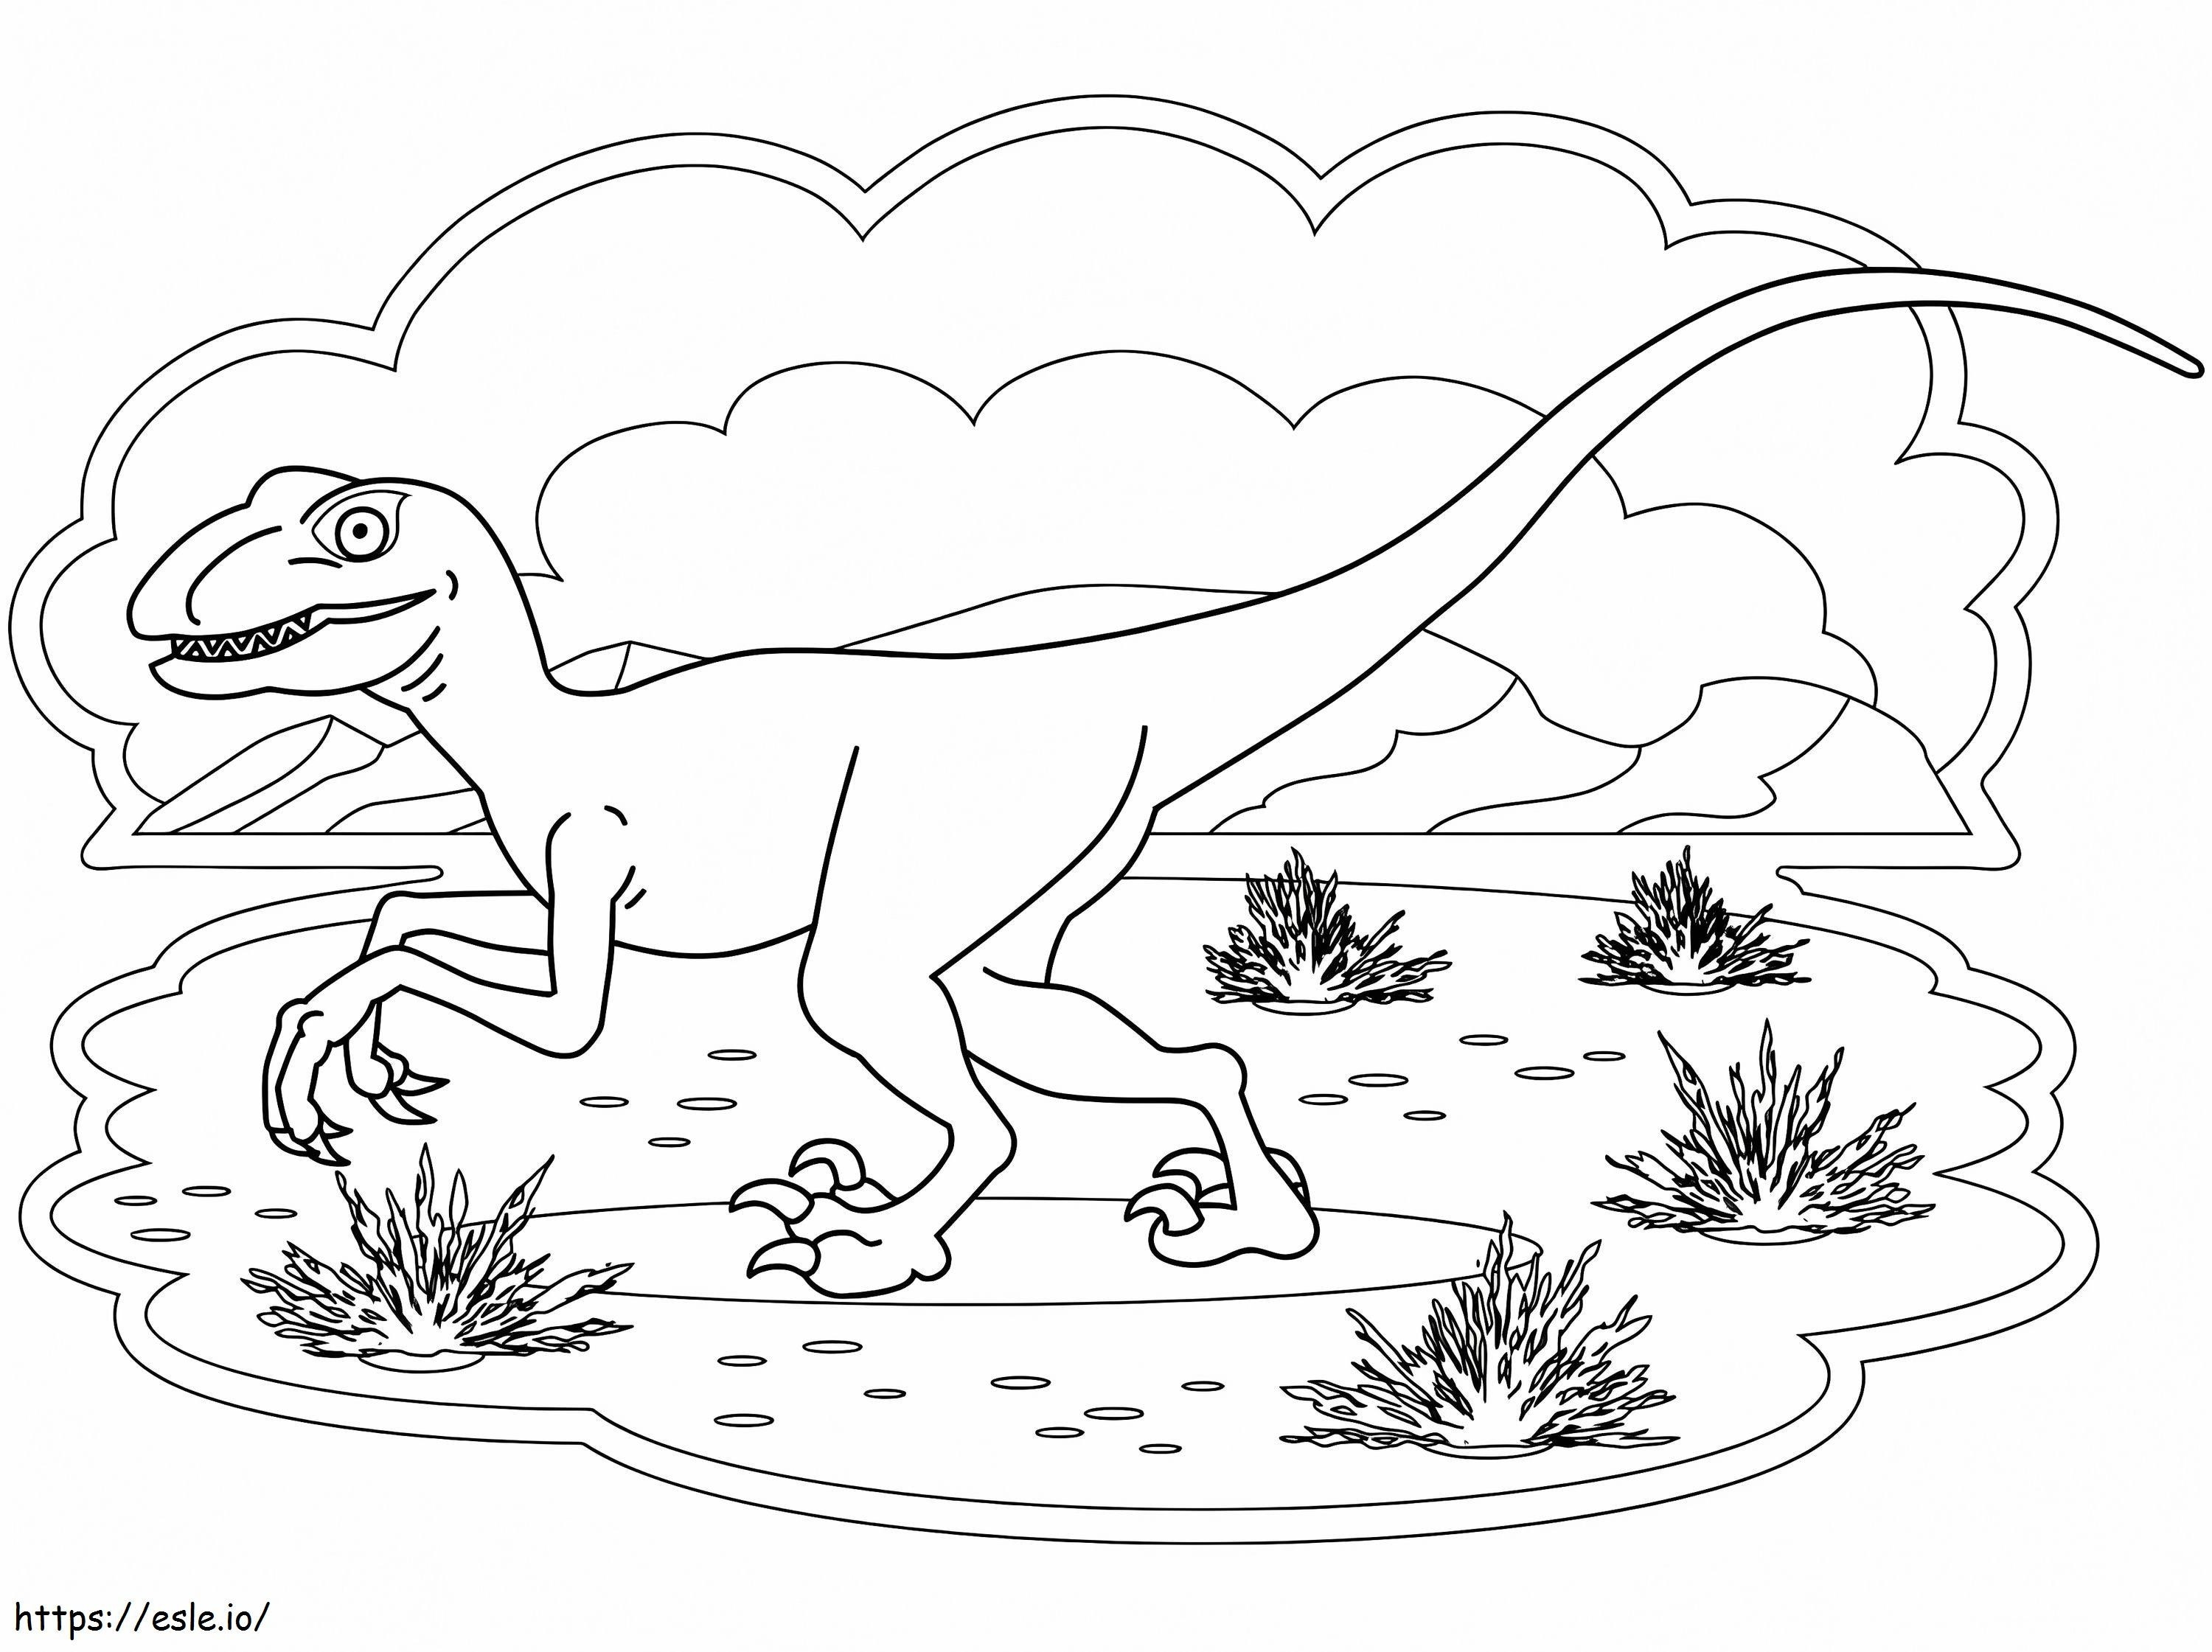 Coloriage Dinosaure Vélociraptor 6 à imprimer dessin